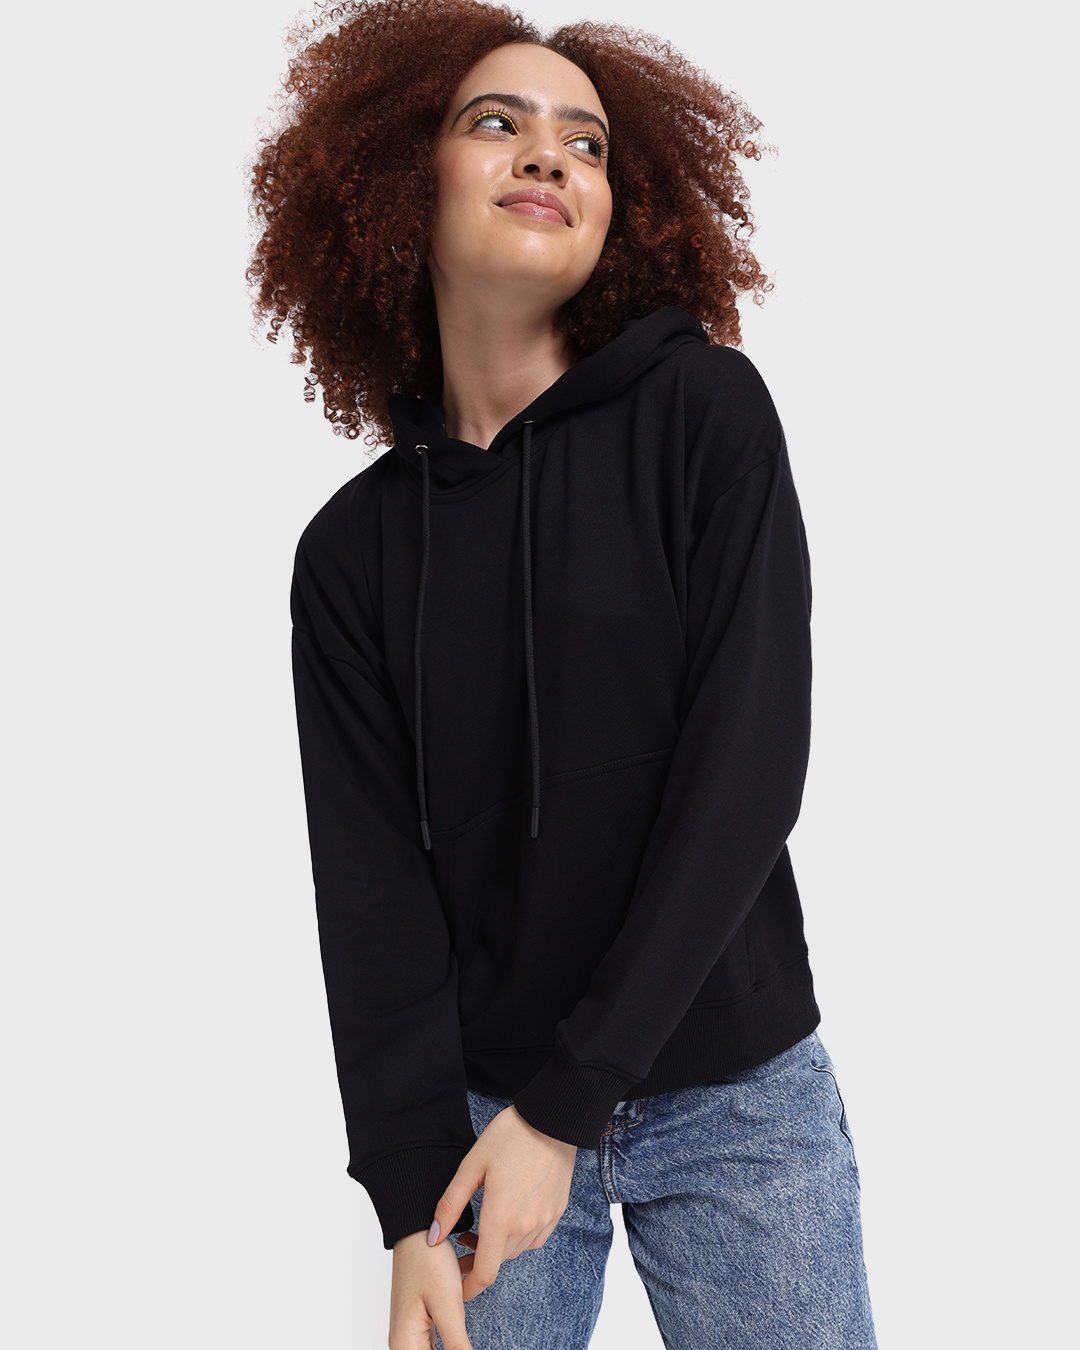 Buy Women's Black Oversized Hoodie Online at Bewakoof